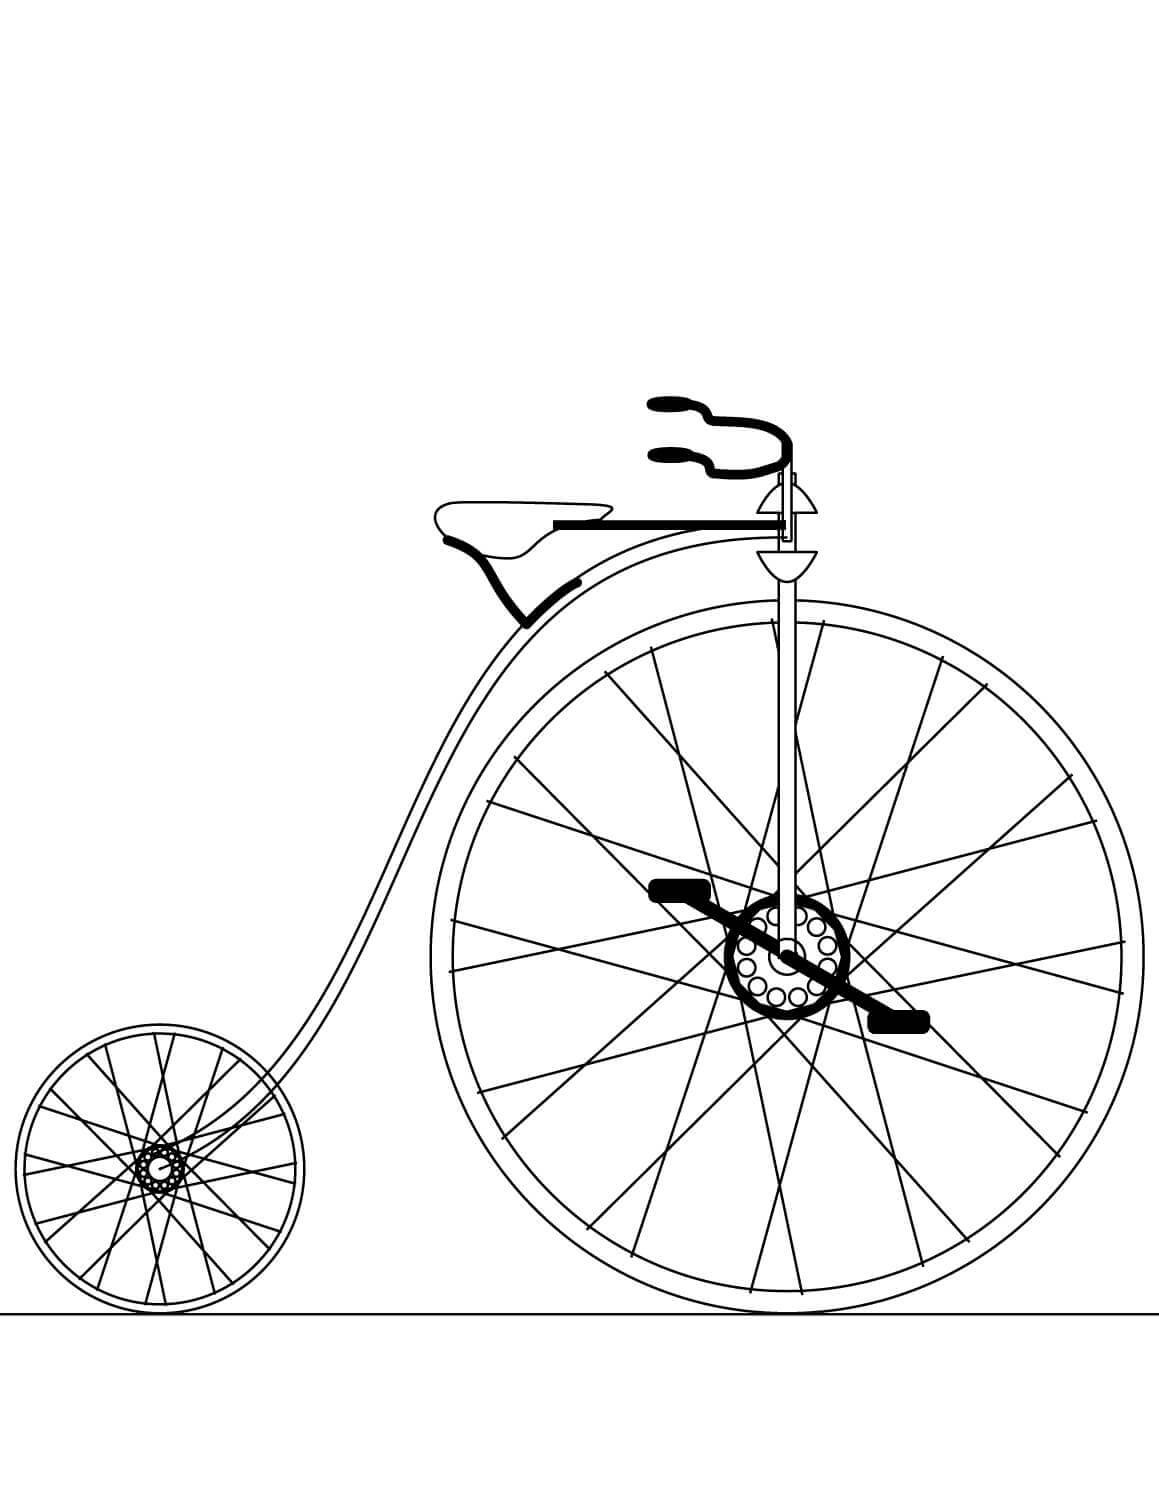 Tô màu xe đạp thế kỉ 19